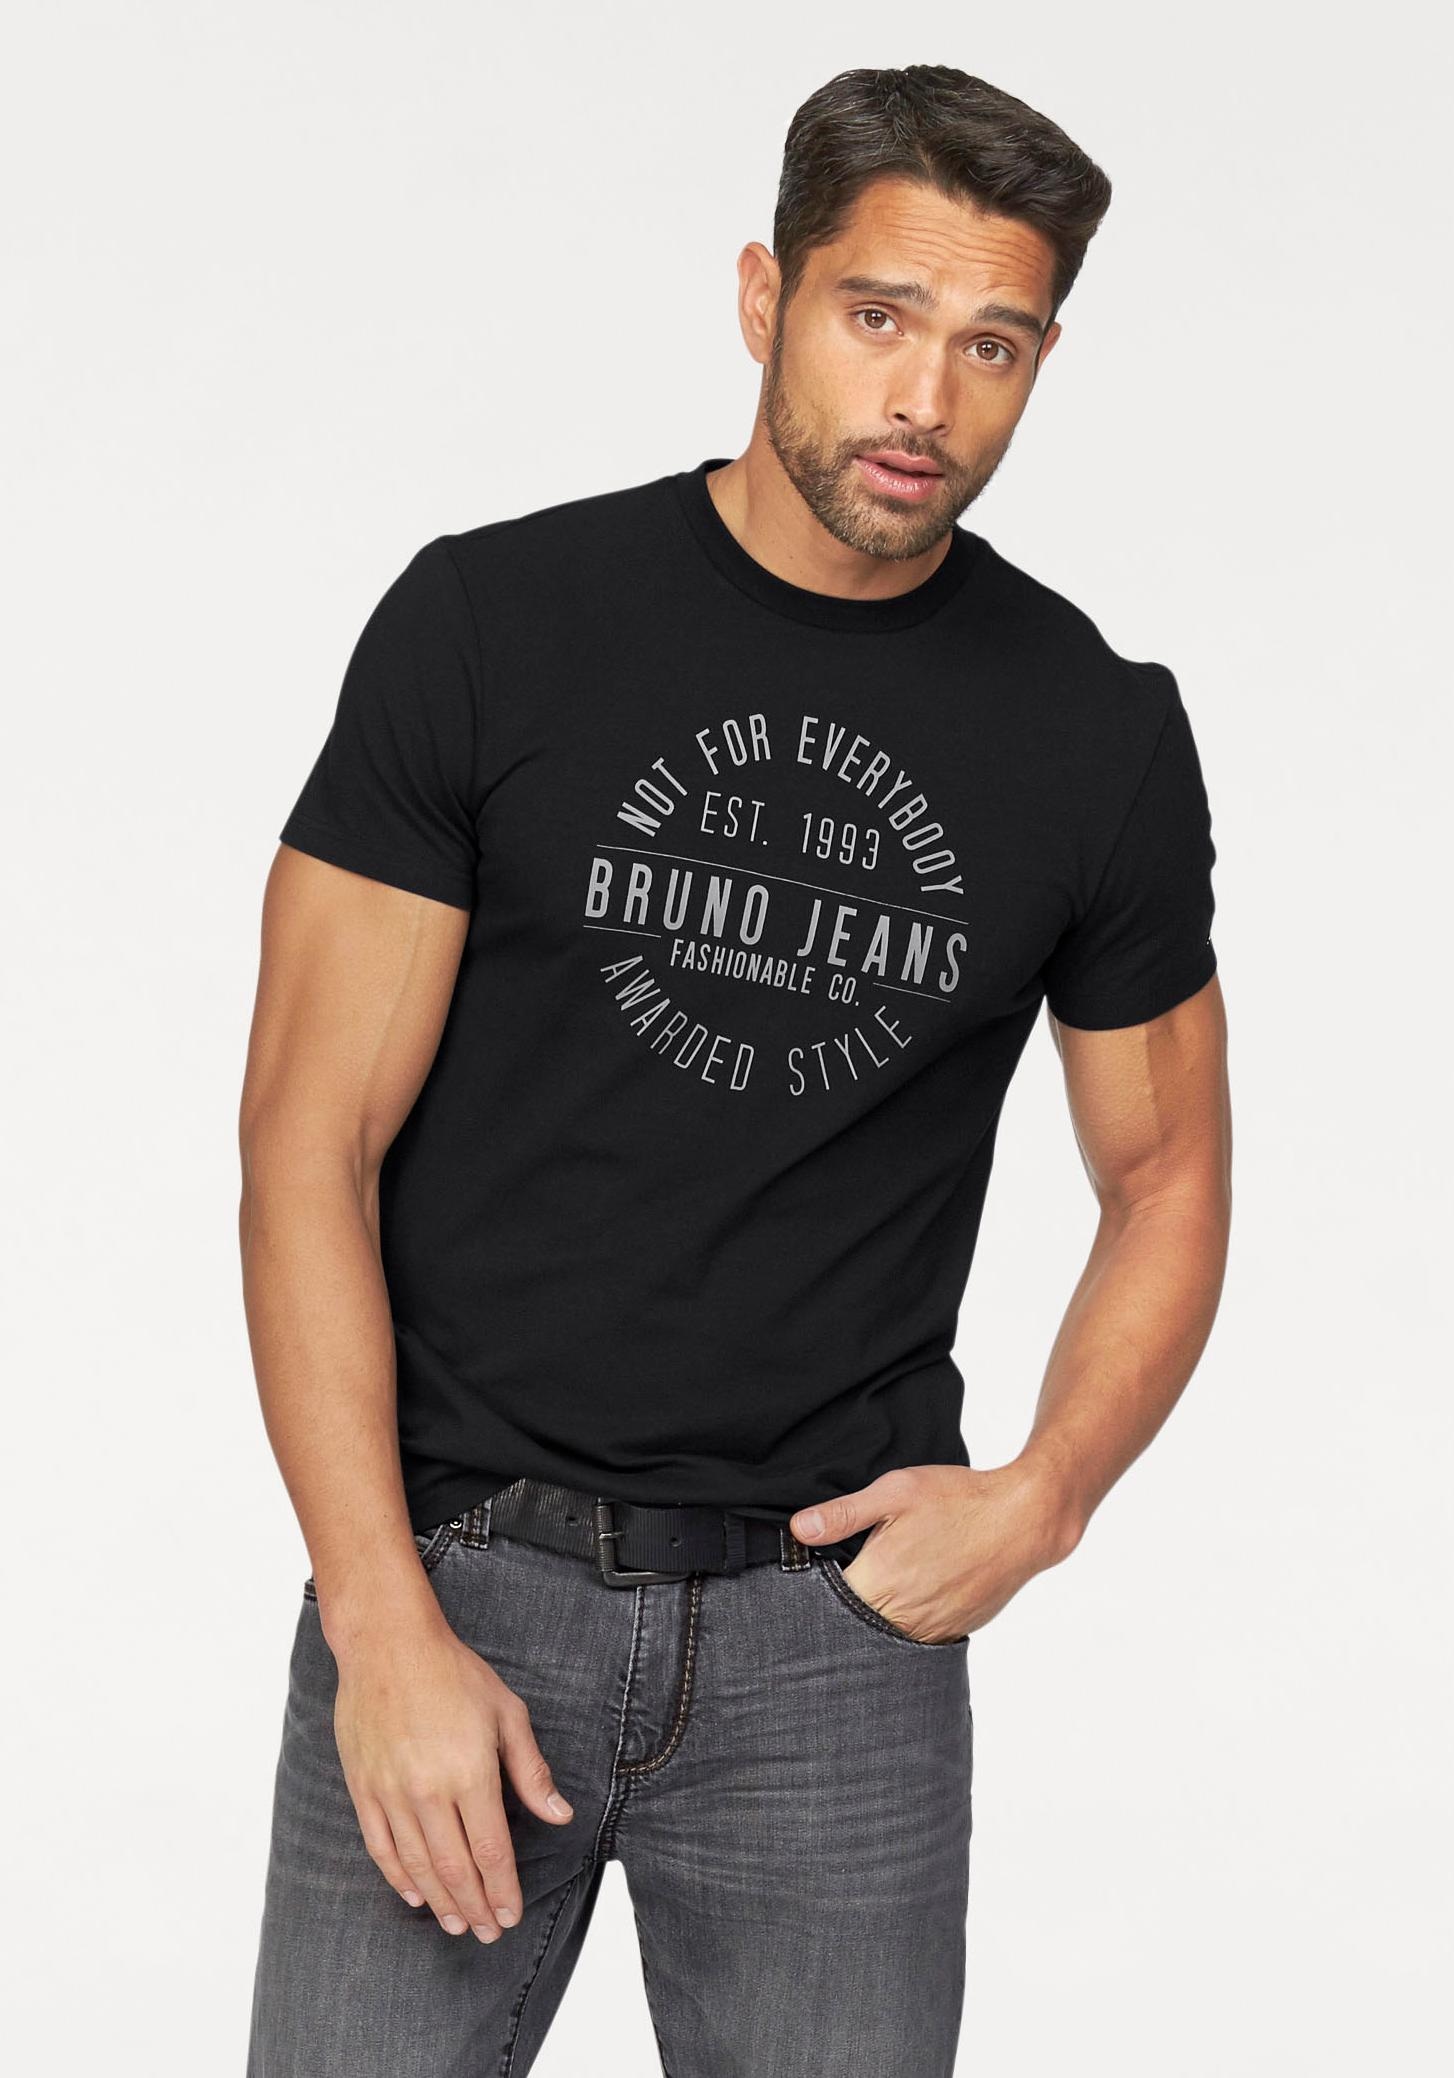 Bruno mit Banani Markenprint günstig kaufen T-Shirt,